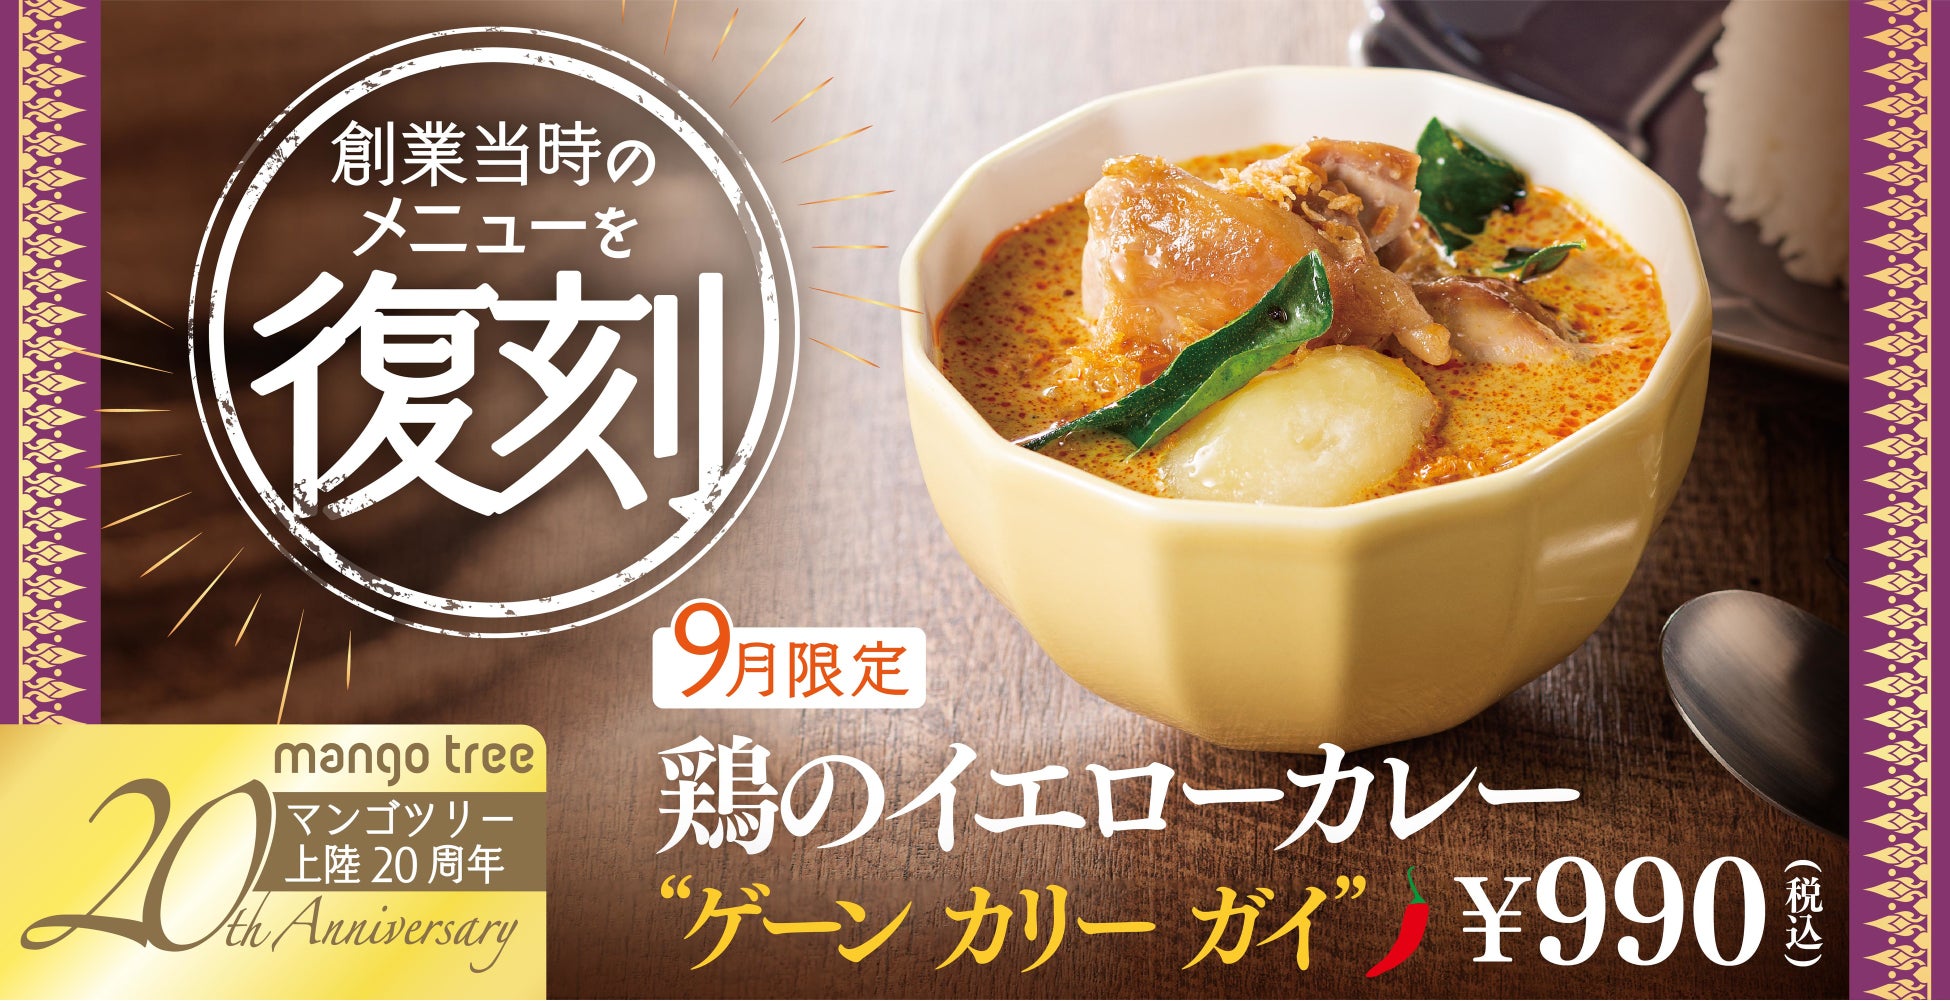 8月25日木曜日 東京MXTV系列『5時に夢中』でミシュランビブグルマンを受賞した担担麺専⾨店の東京旗艦店舗「KOBE ENISHI 五反⽥店」（東京都品川区）が紹介されます。